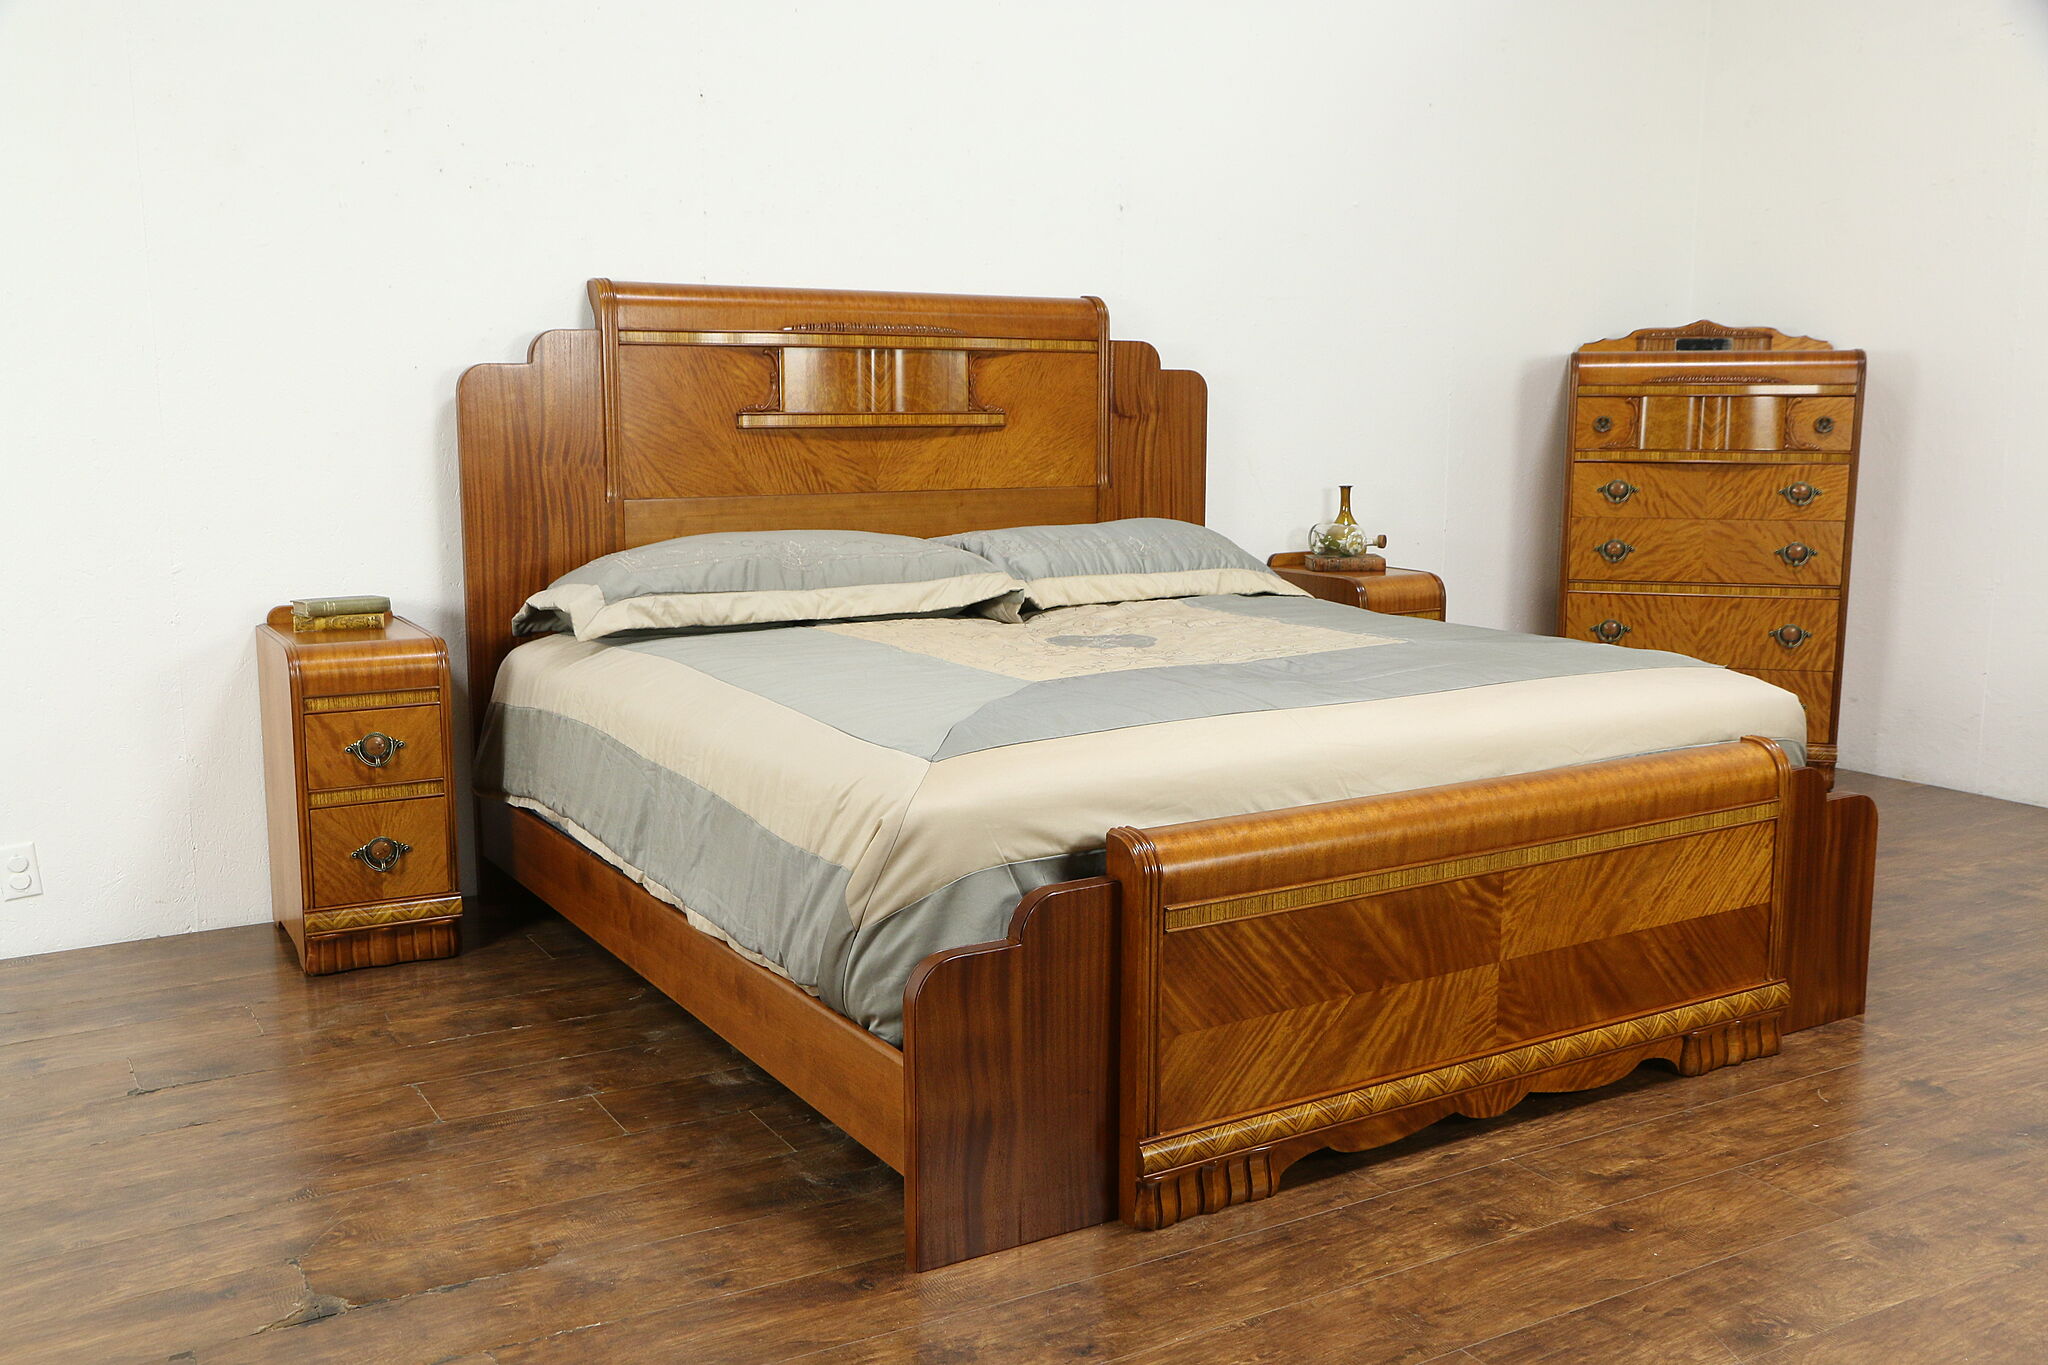 1930s art deco bedroom furniture bakelite